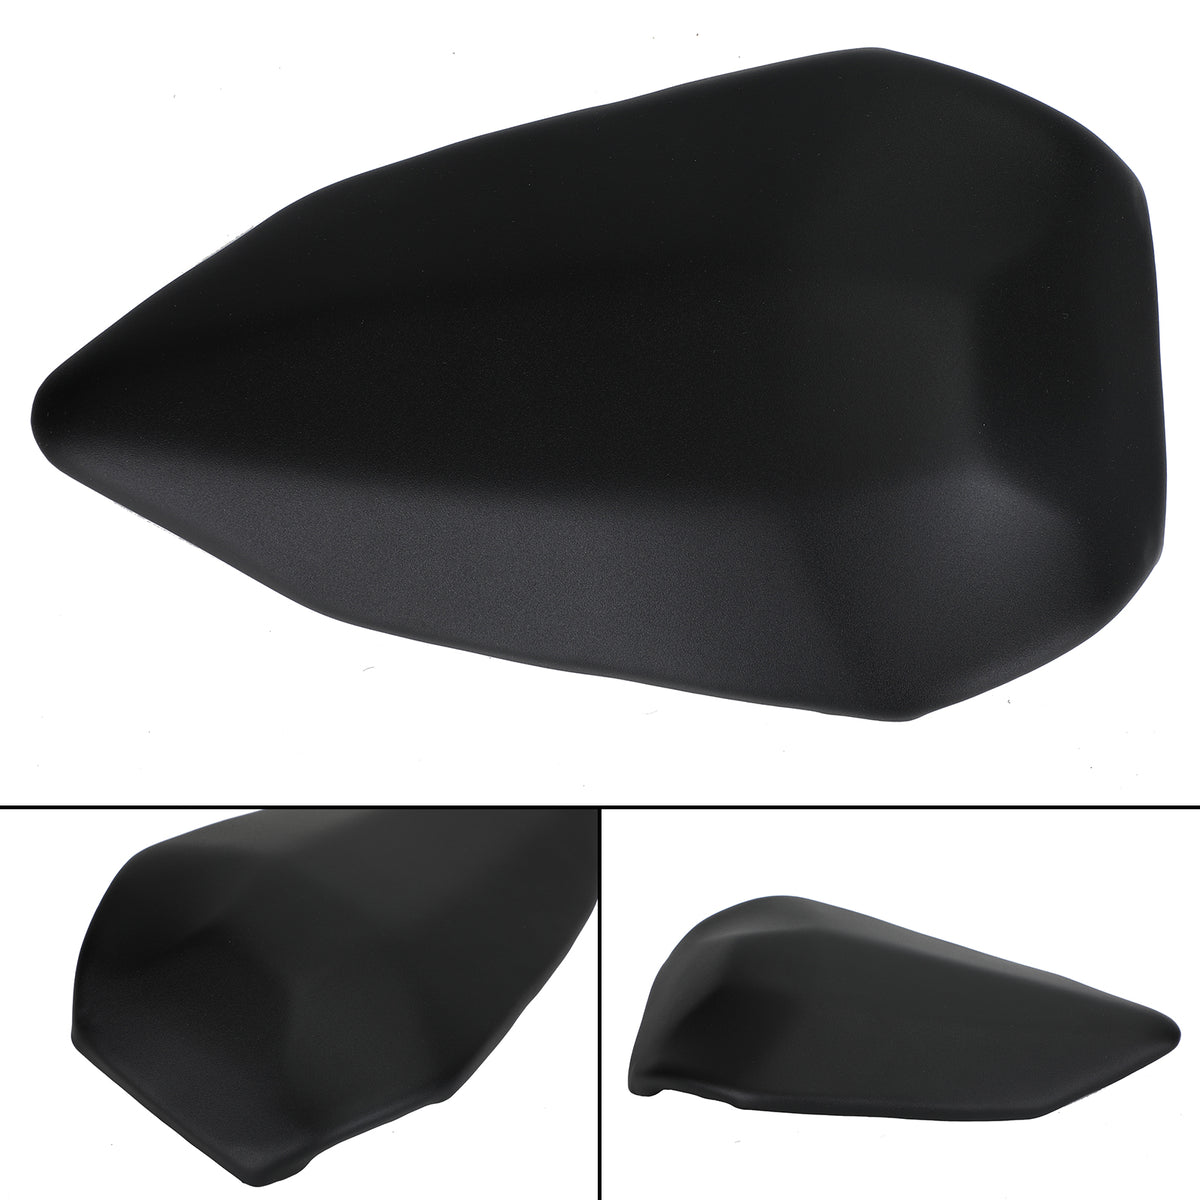 Schwarzes Kissen für den hinteren Beifahrersitz, passend für Ducati 899 2012–2014 und 1199 2012–2014